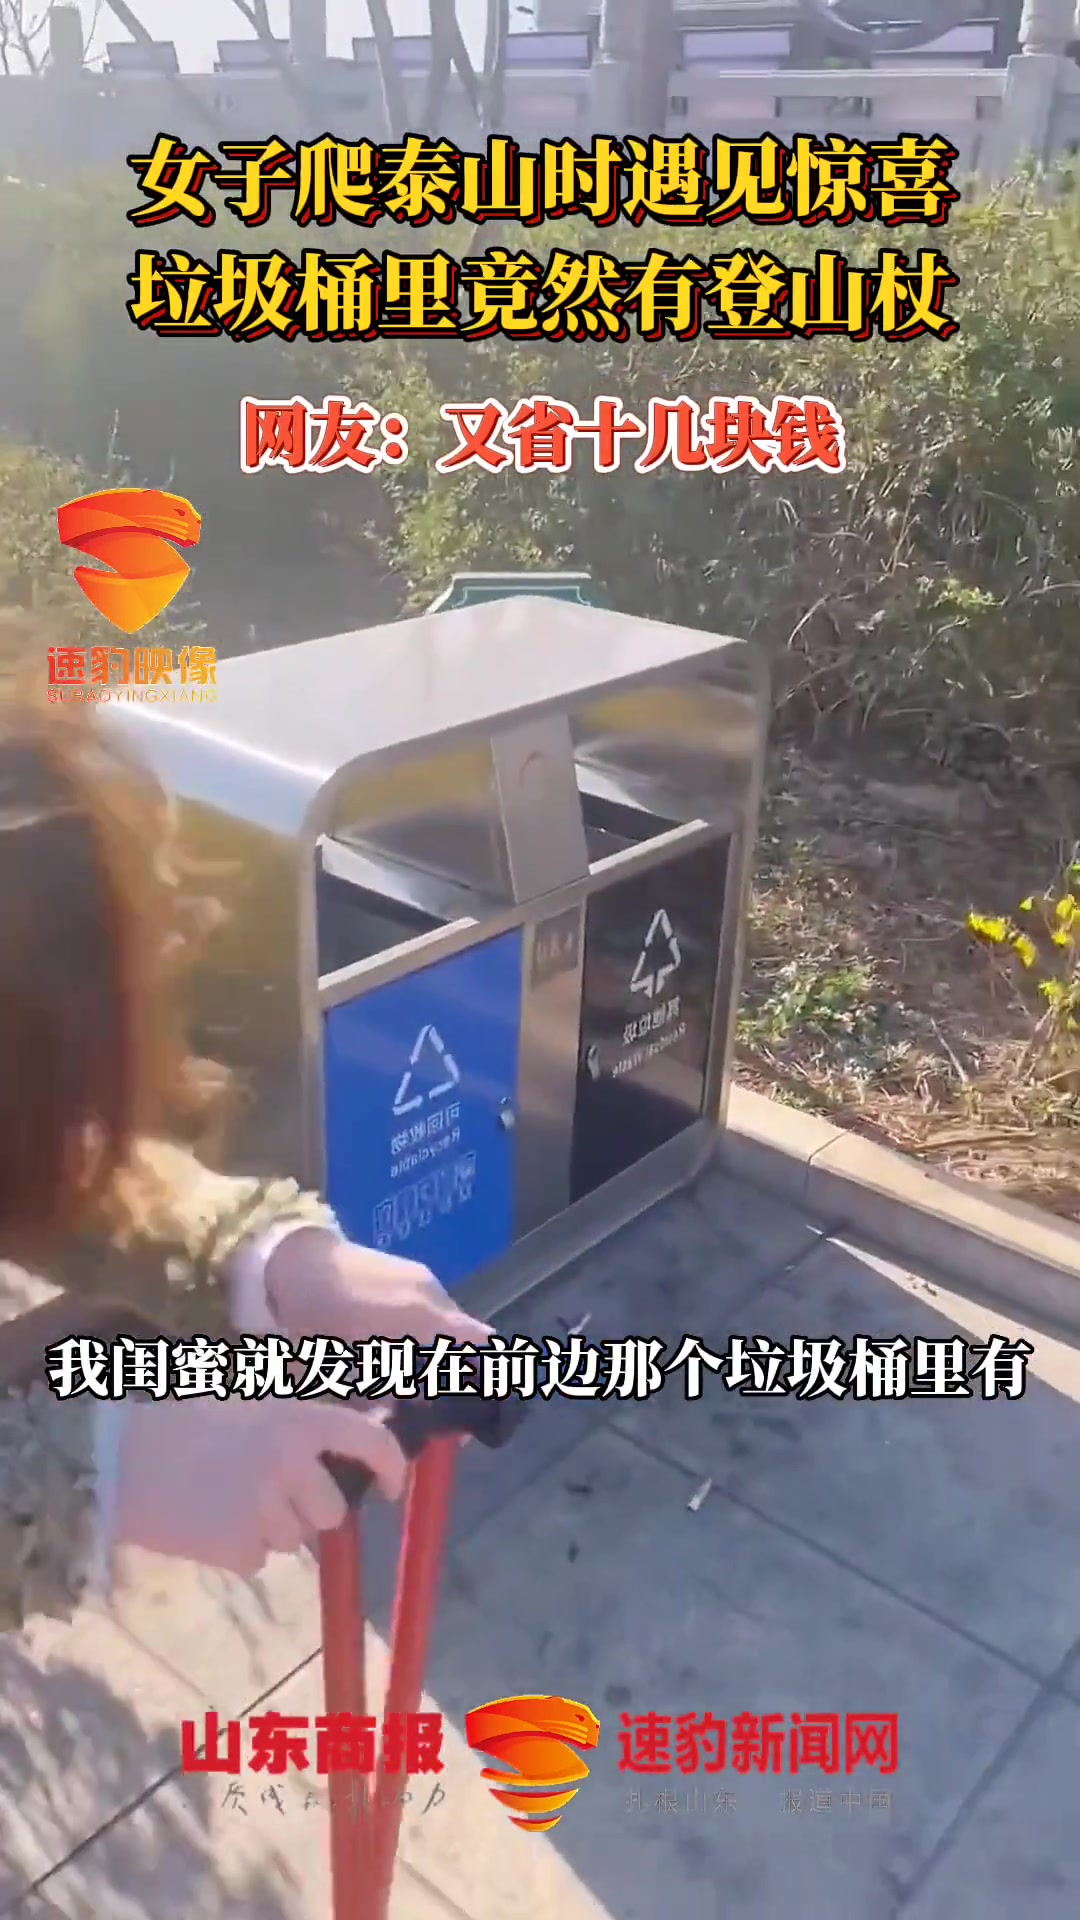 女子爬泰山时遇见惊喜 垃圾桶里竟然有登山杖